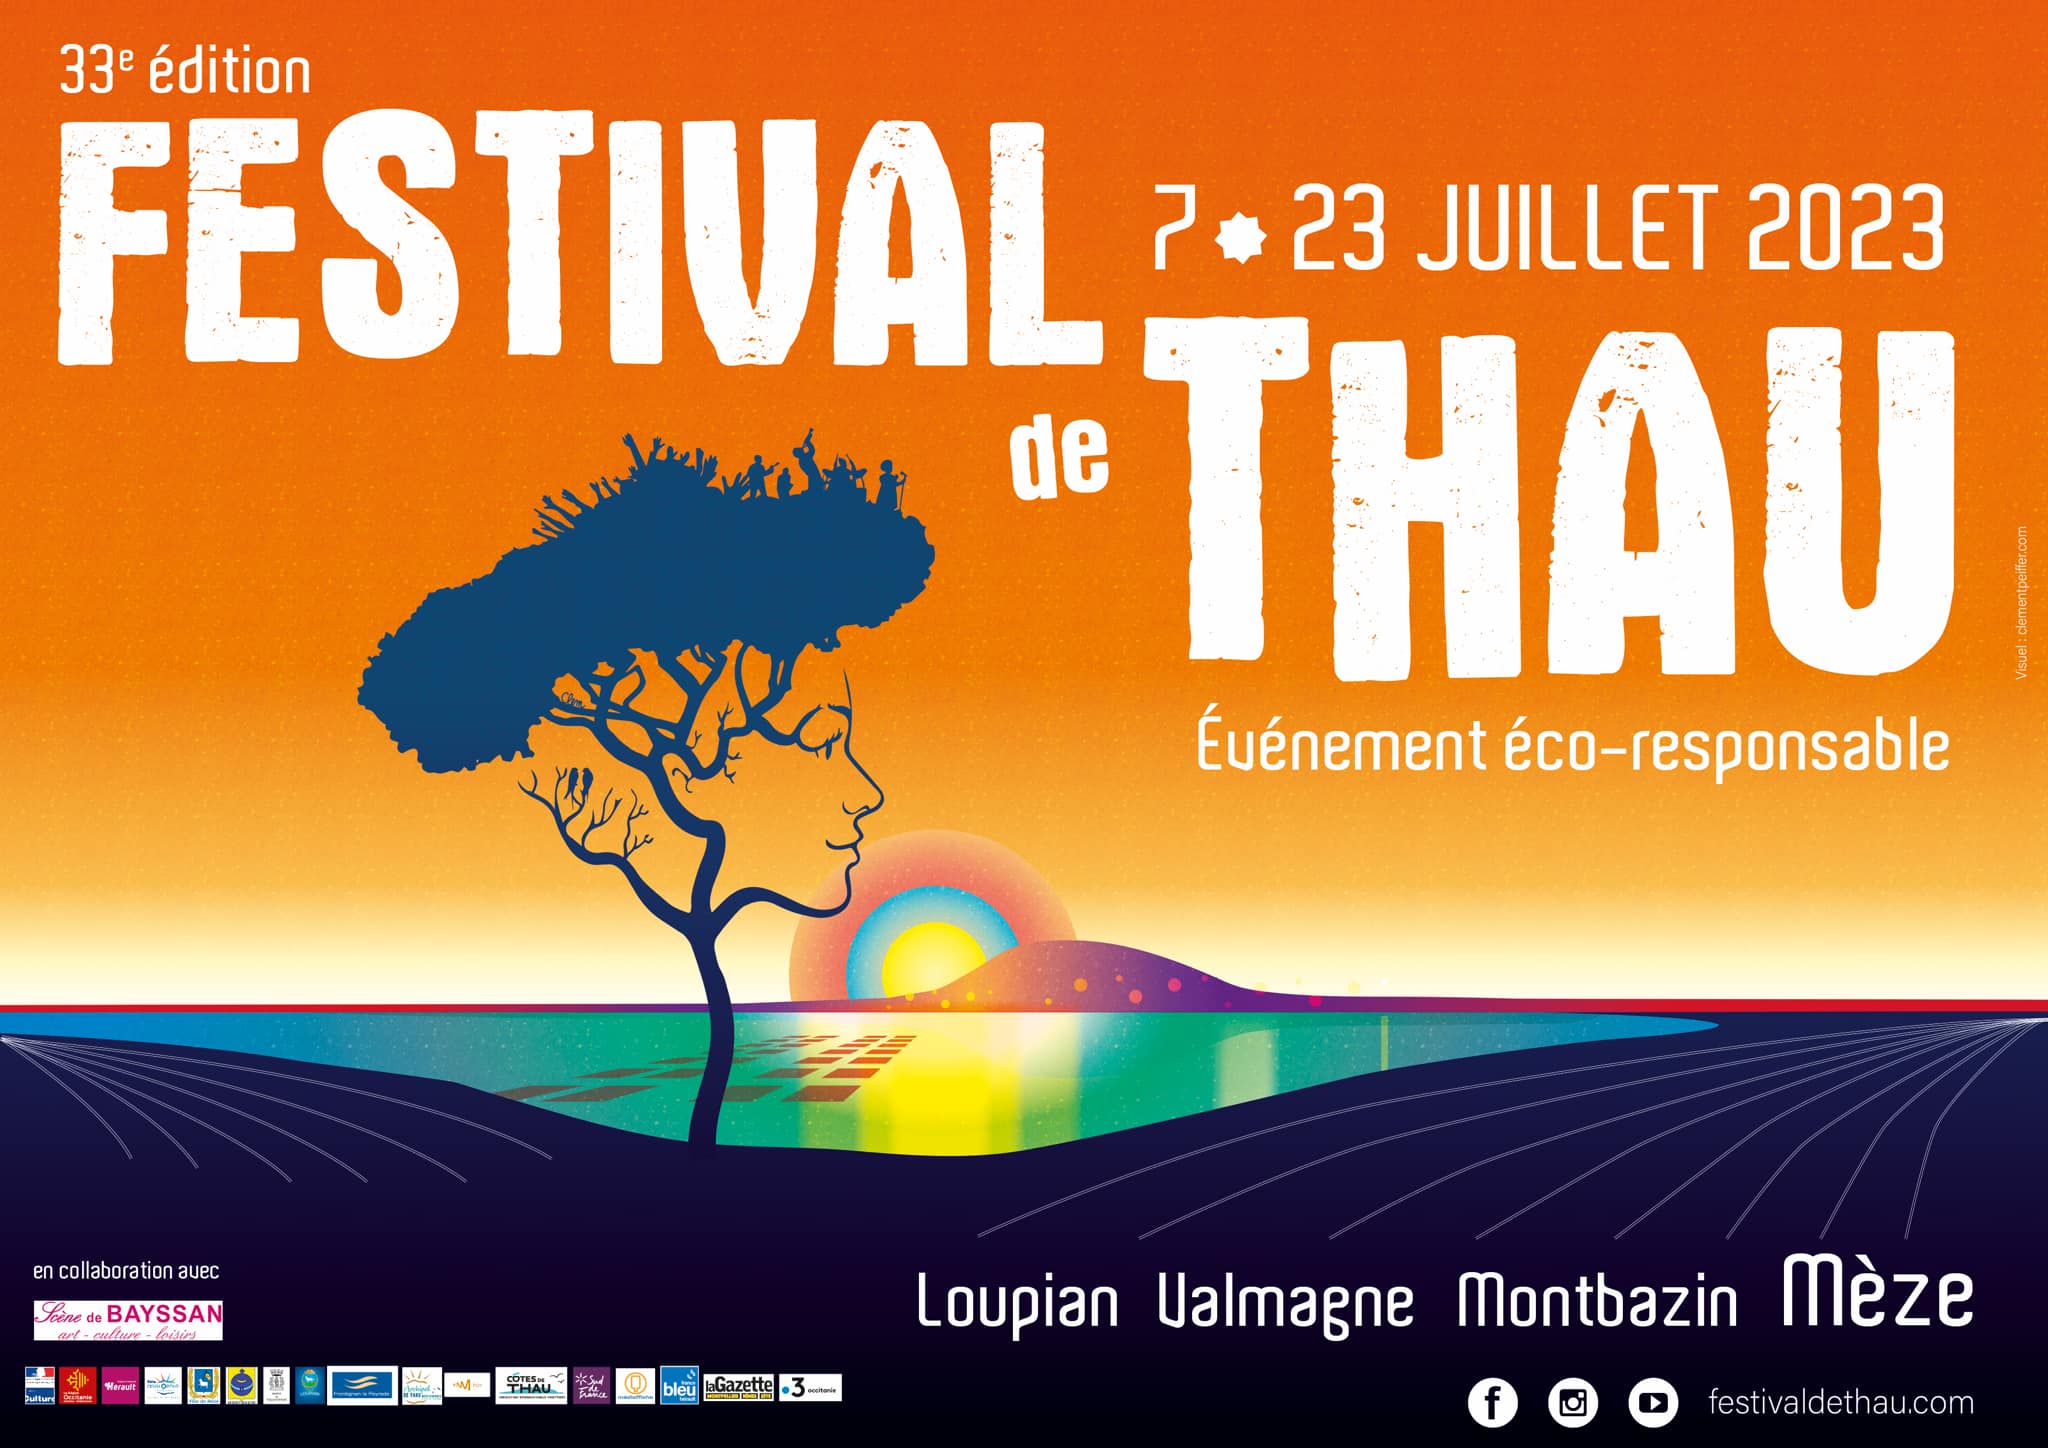 festival de thau 34 juillet 2023 